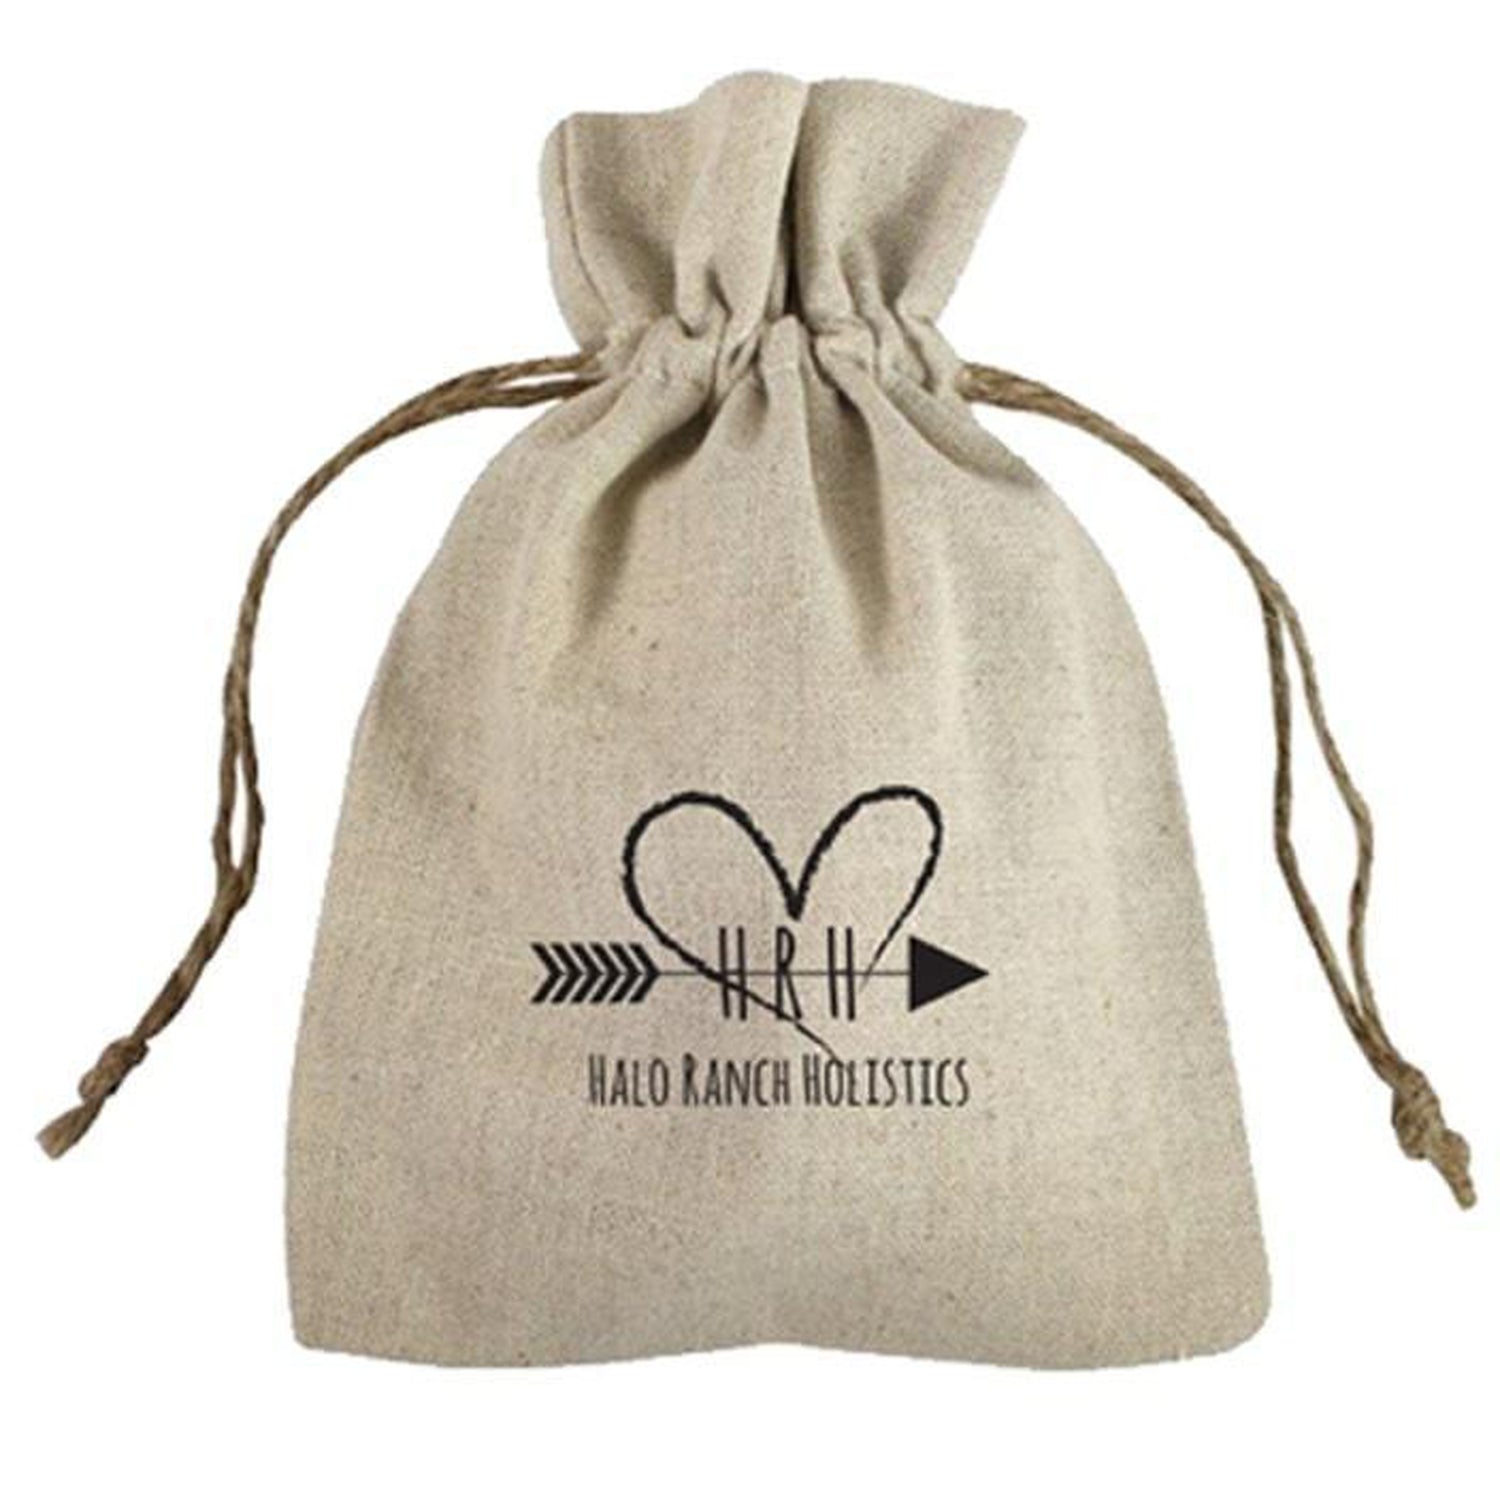 Custom Printed Bags, Print Logo on Tote Bags, Silk Screen Printing – BagzDepot™